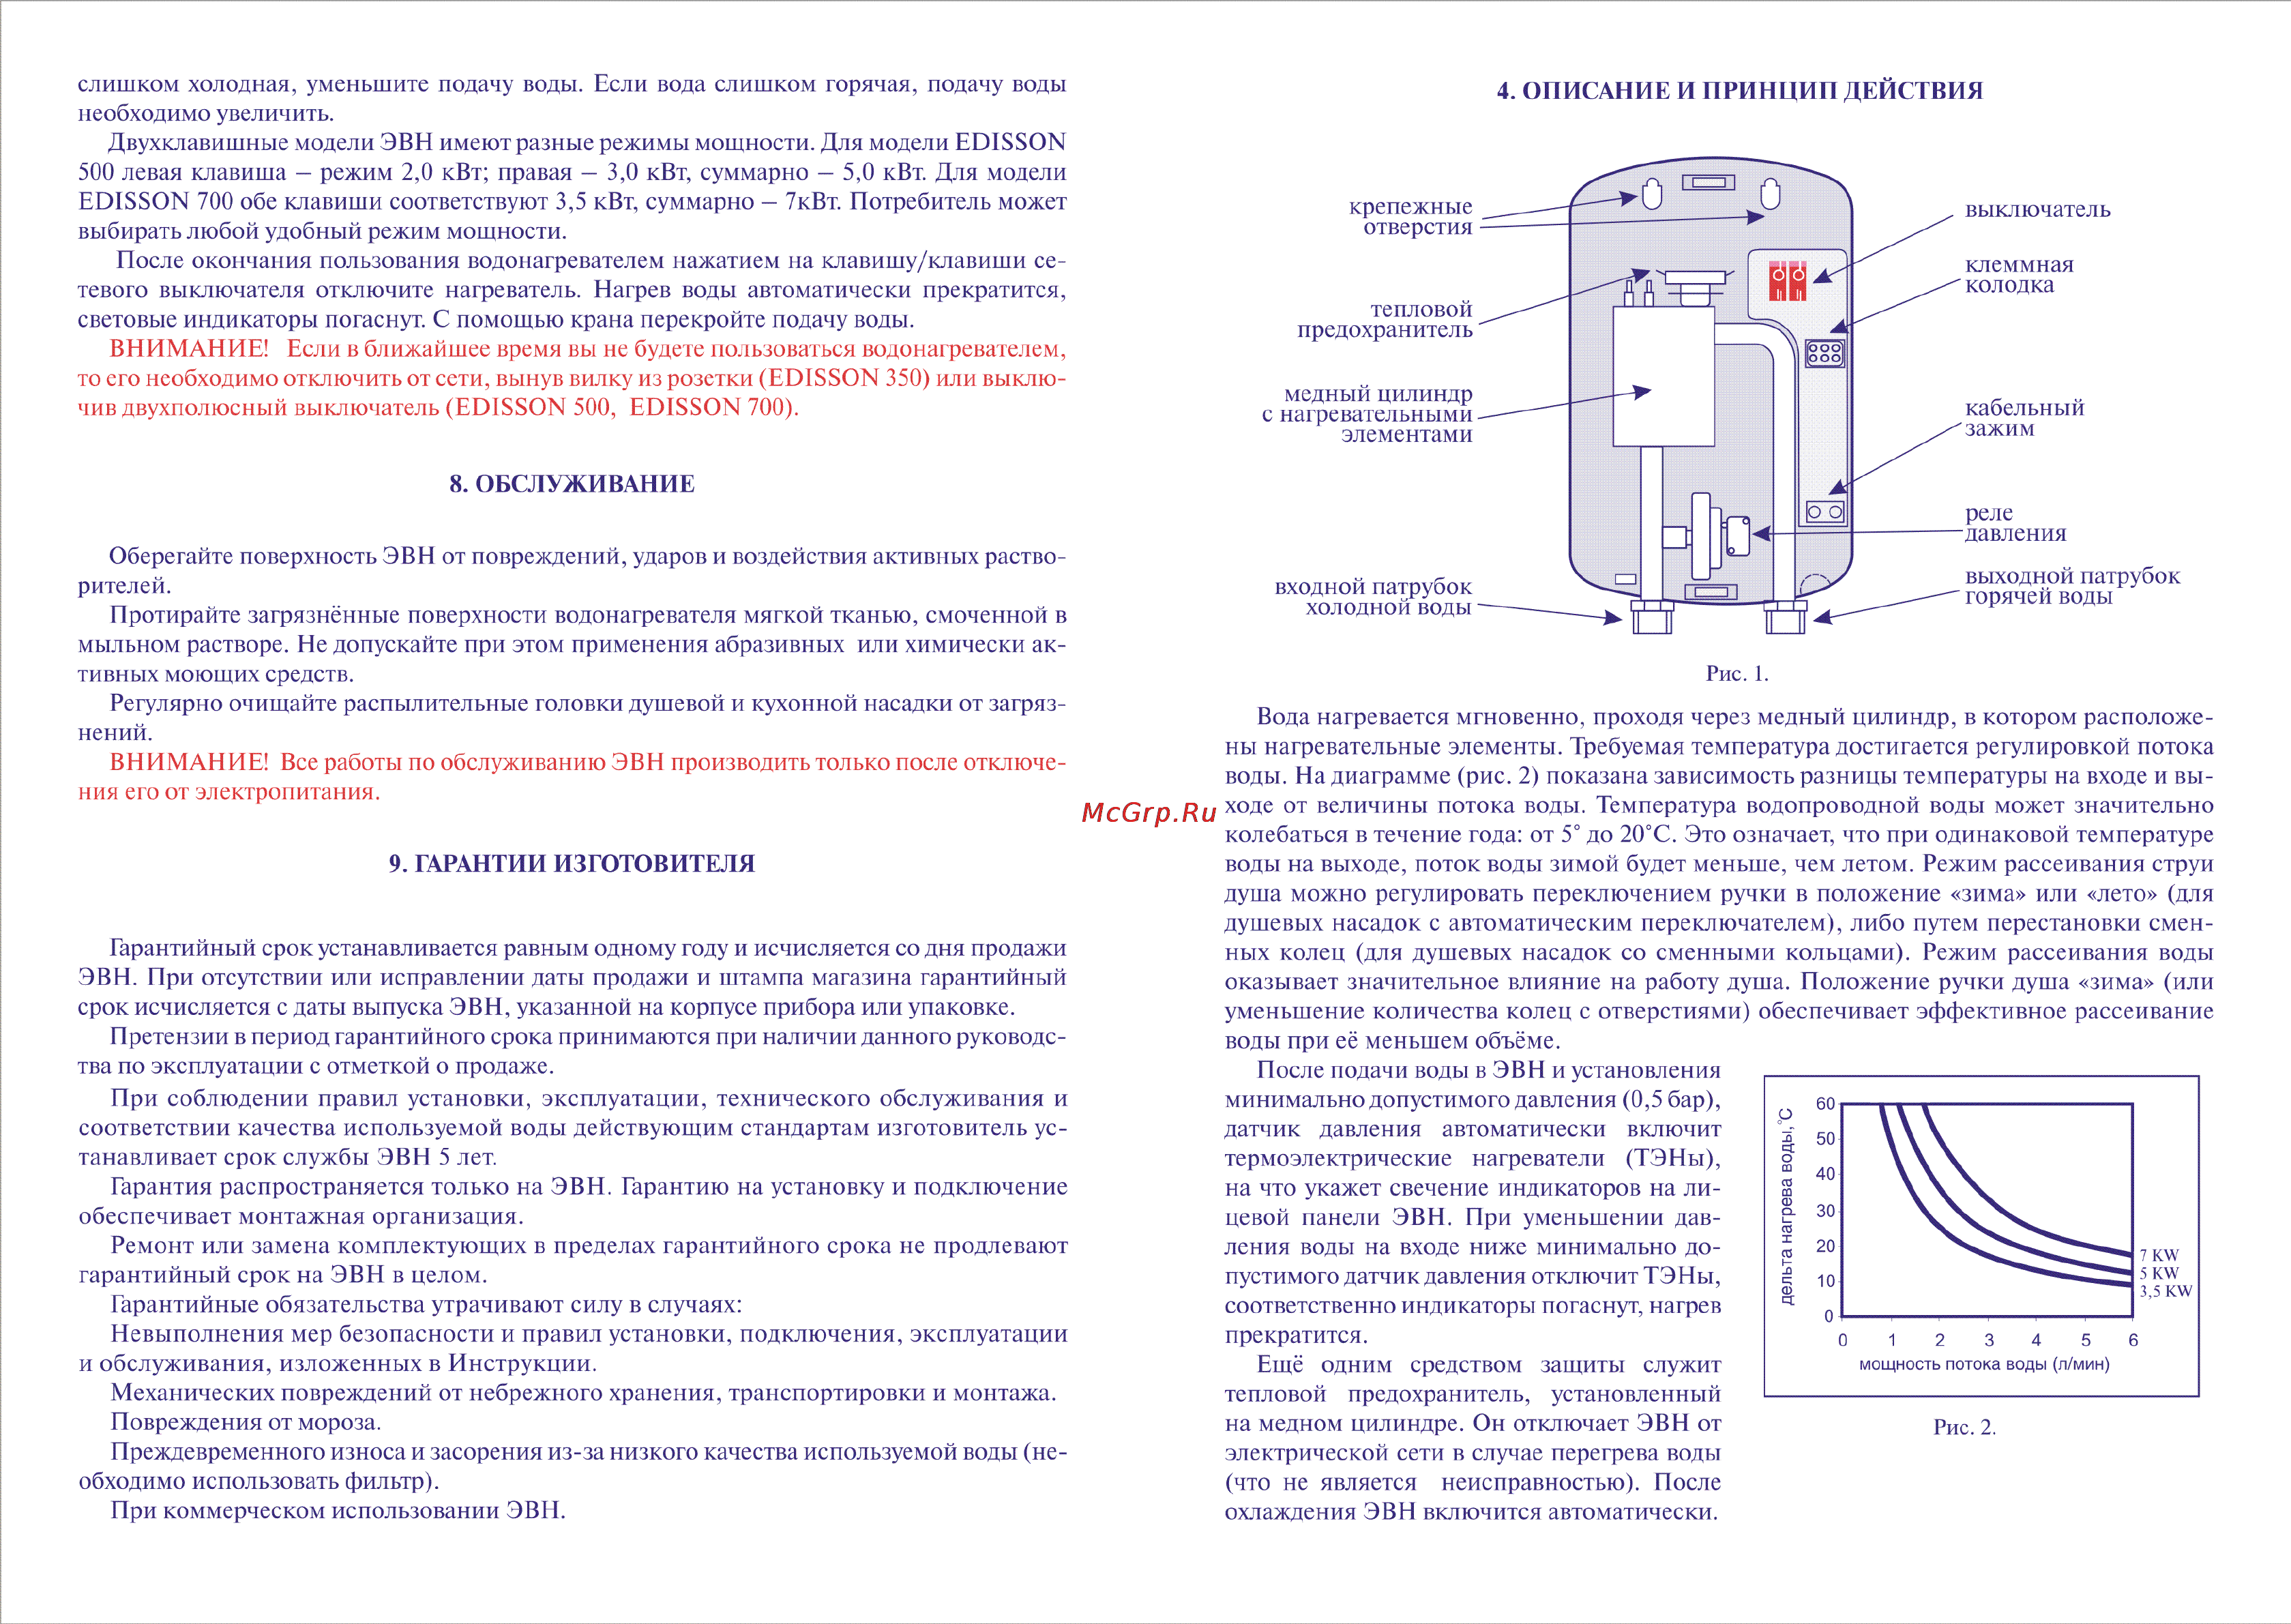 Обзор бойлеров термекс: схема нагревателя и отзывы пользователей